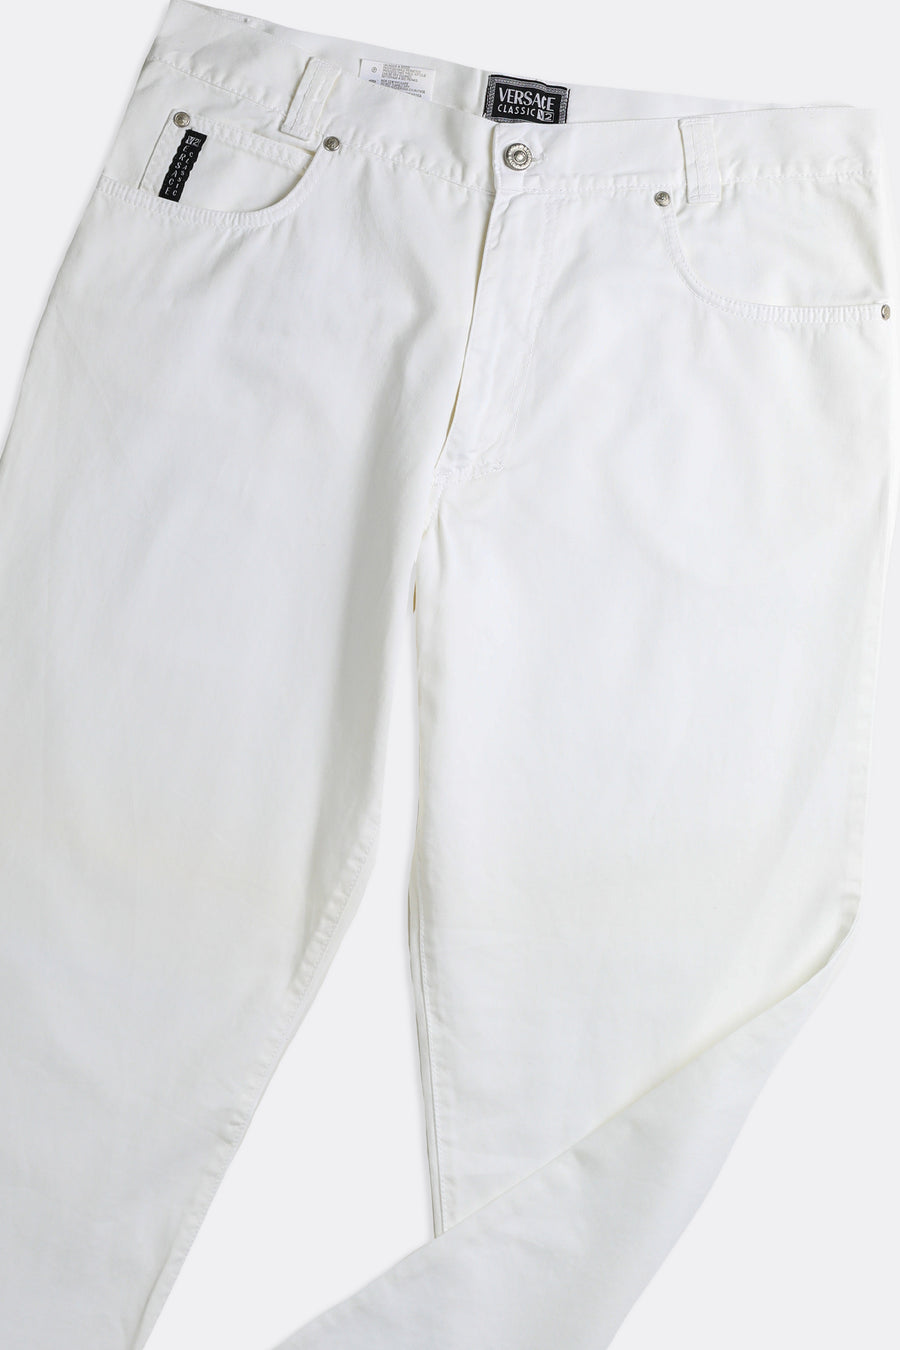 Vintage Versace Denim Pants - W36